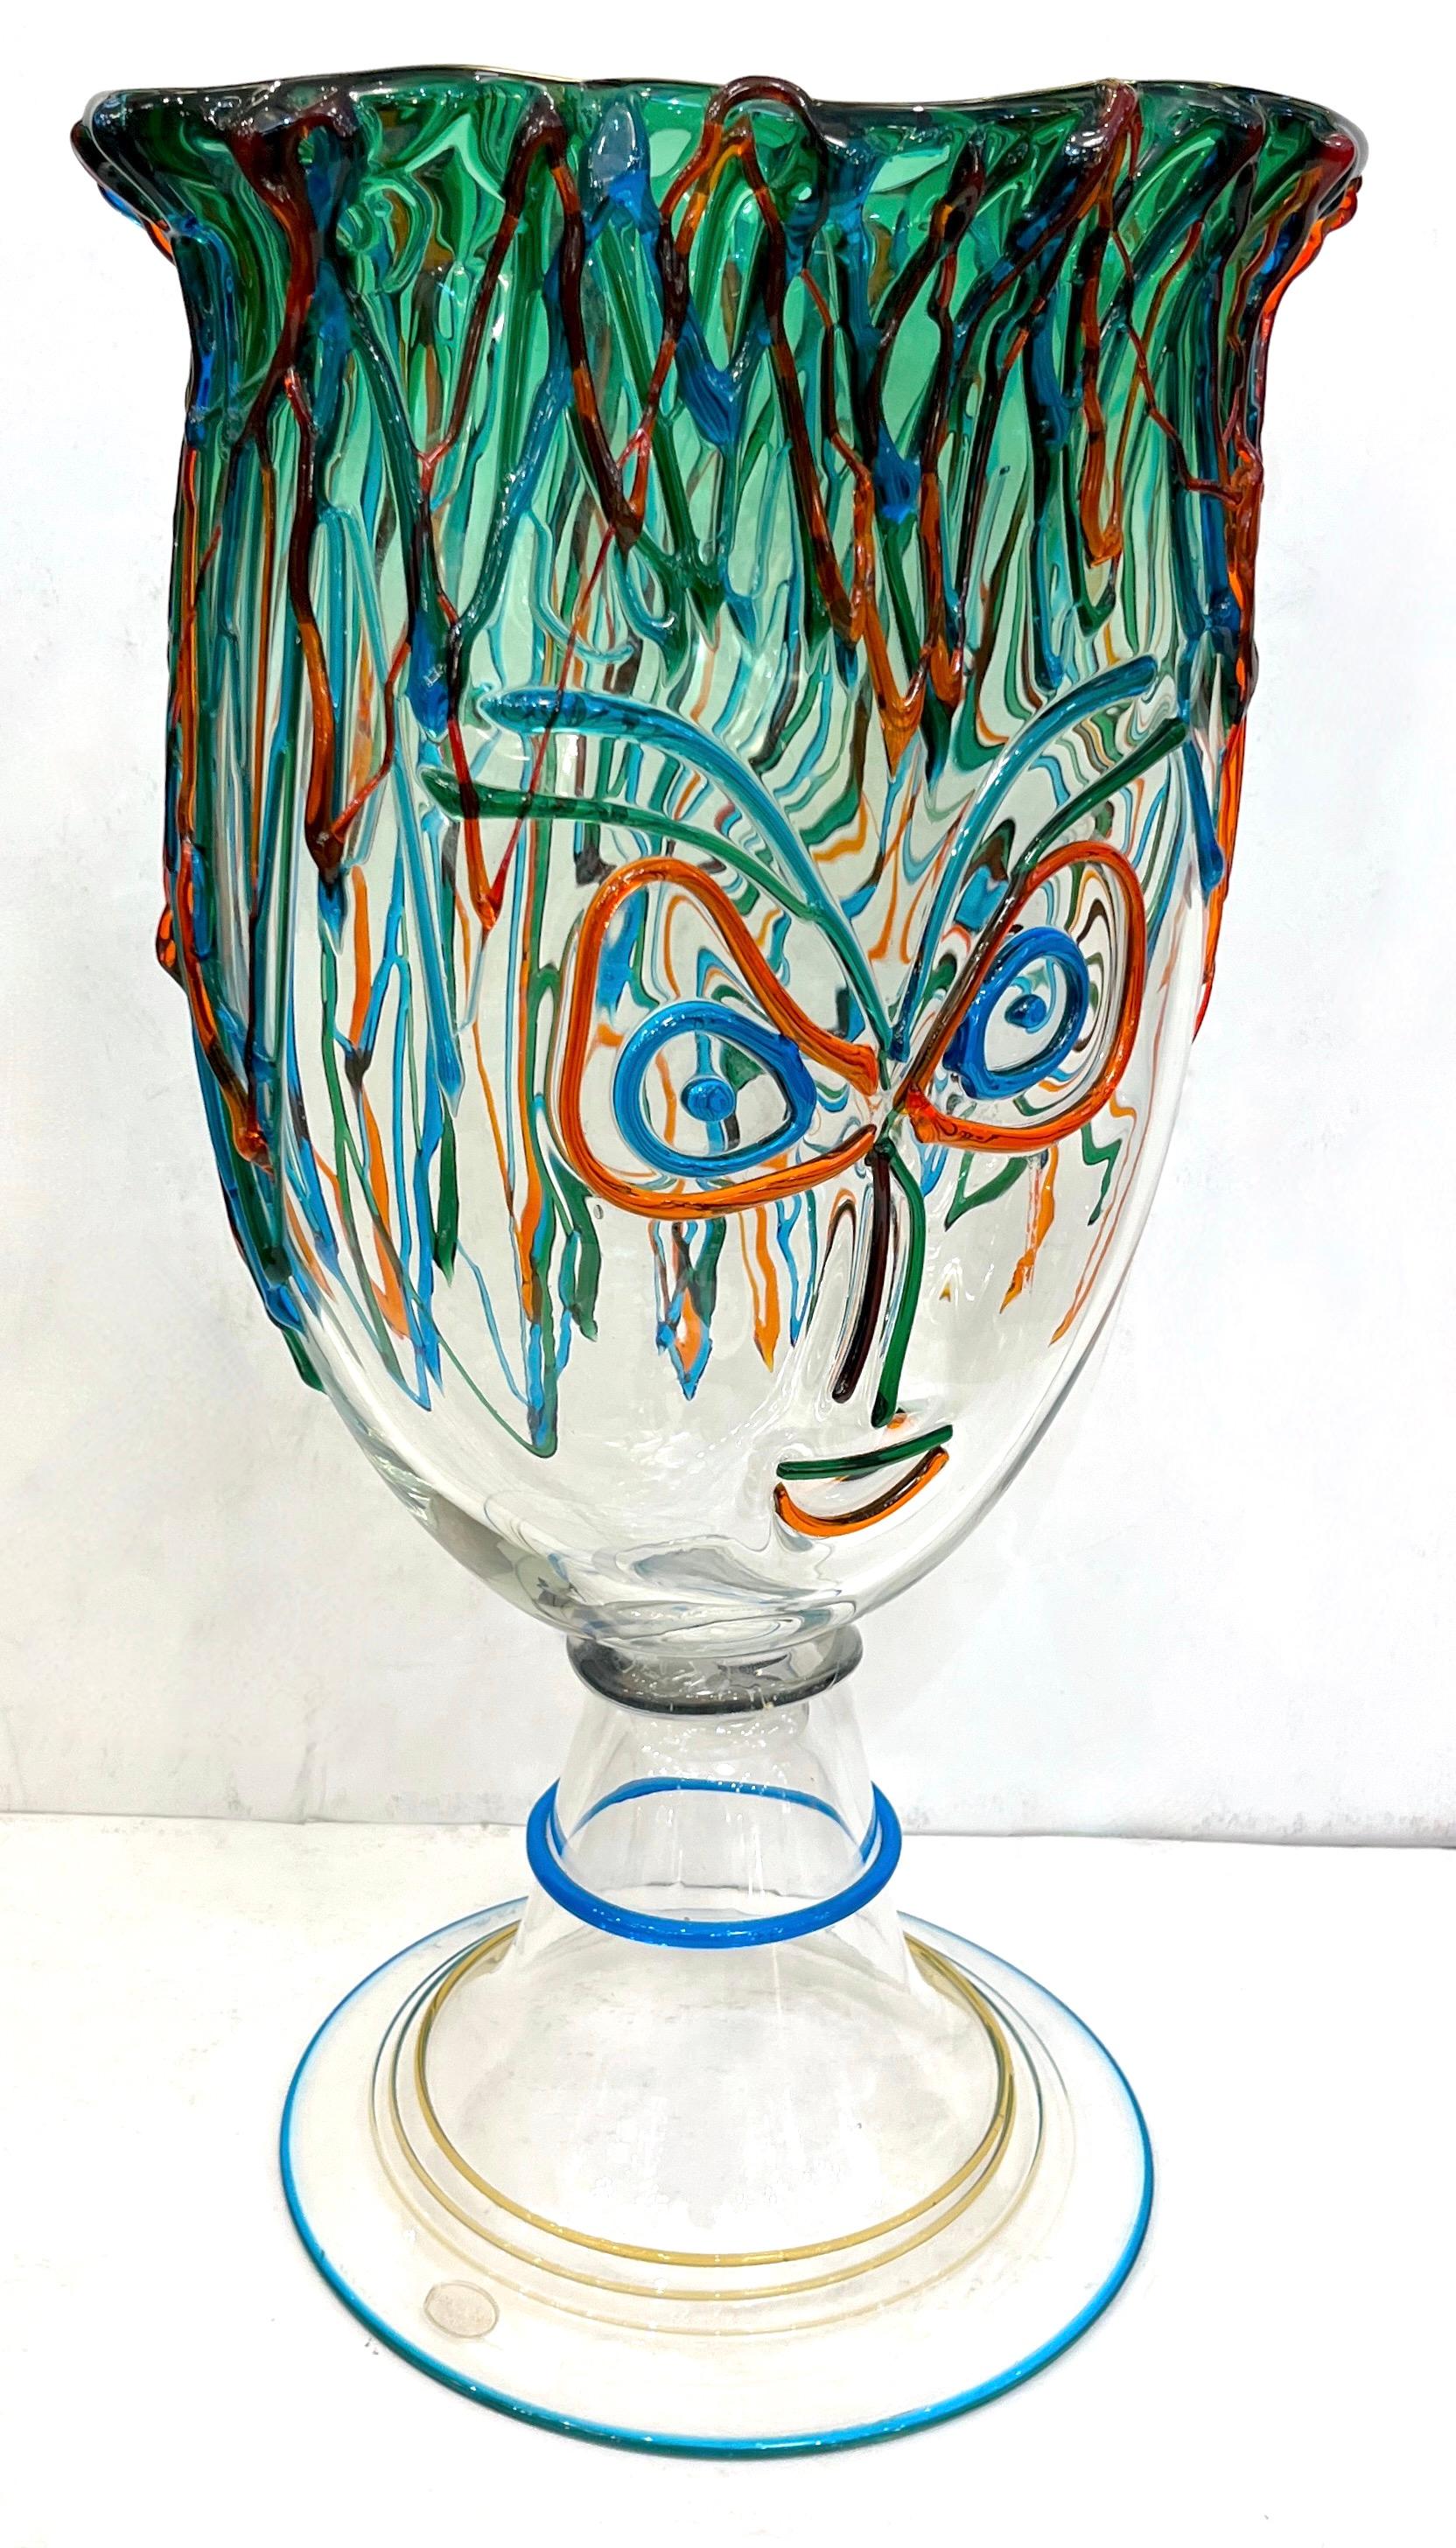 Diese signierte Vase ist eine einzigartige Vintage-Kopfskulptur aus Kunstglas mit modernistischem, dynamischem Design. Hohe Qualität der Ausführung mit dem kristallklaren Körper getönt mit einem oberen Teil in Farbverlauf lindgrün und als Picassian